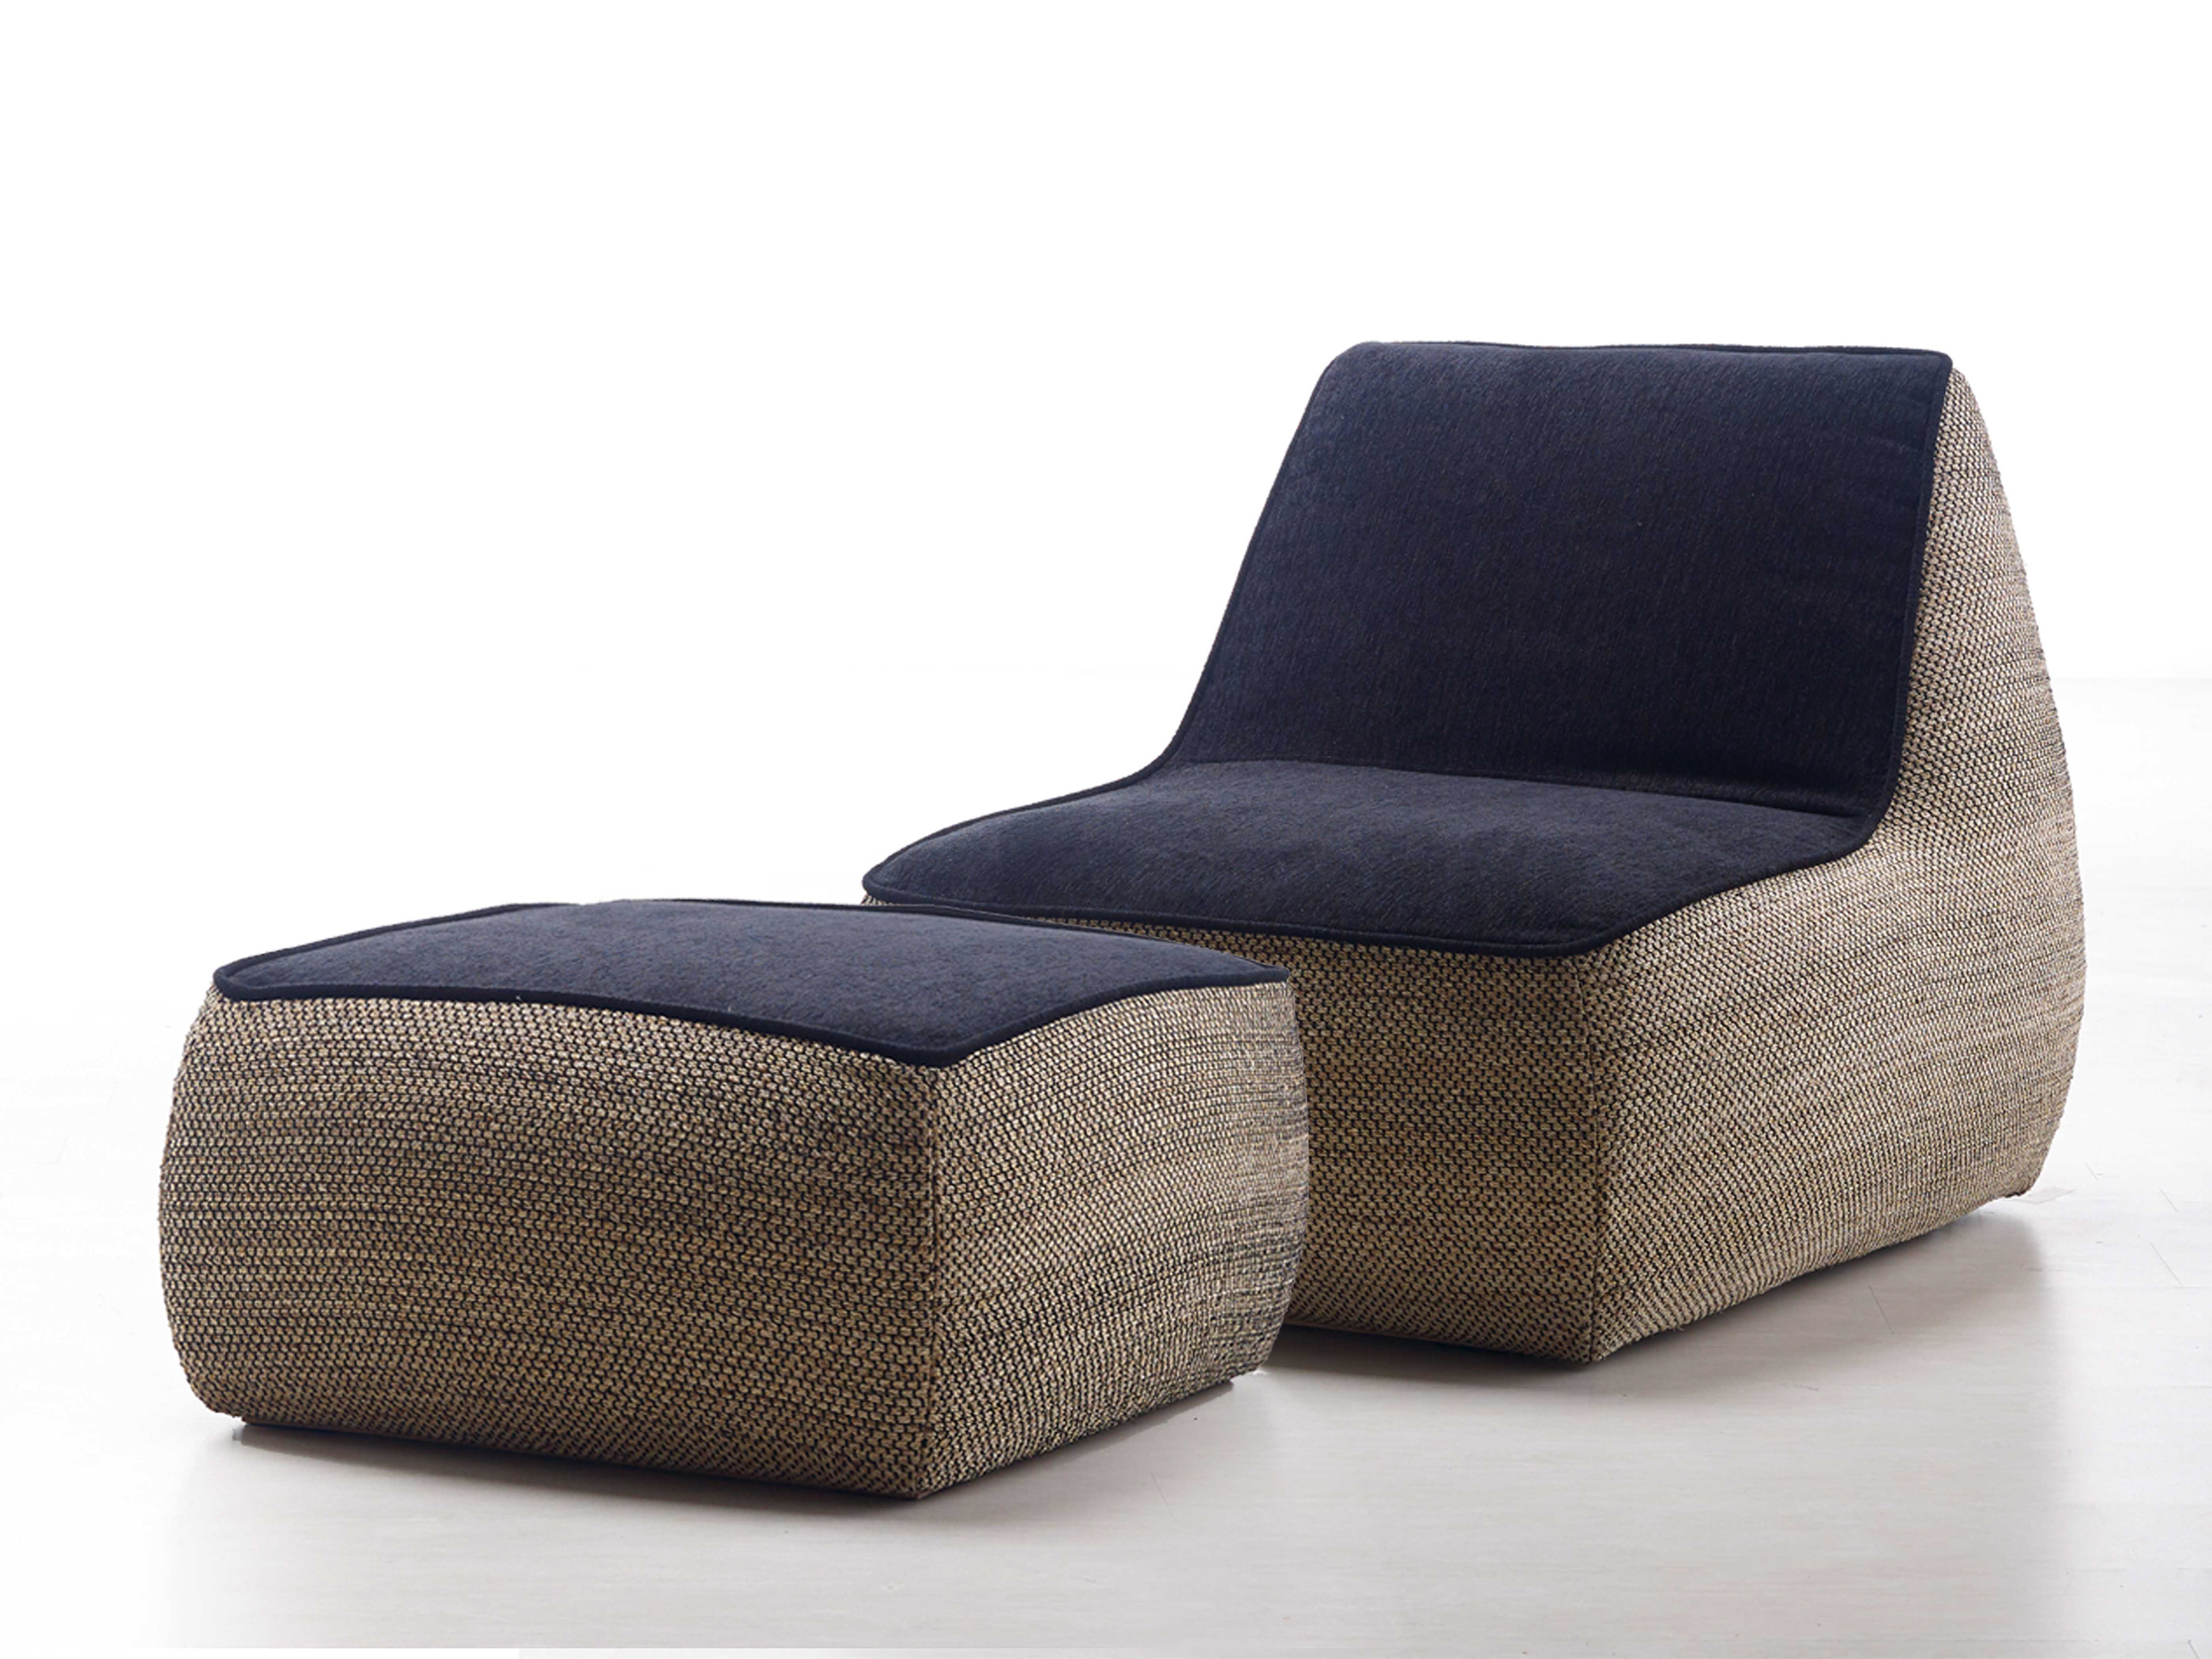 sosa沙发:用环保编织材料营造舒适放松的氛围